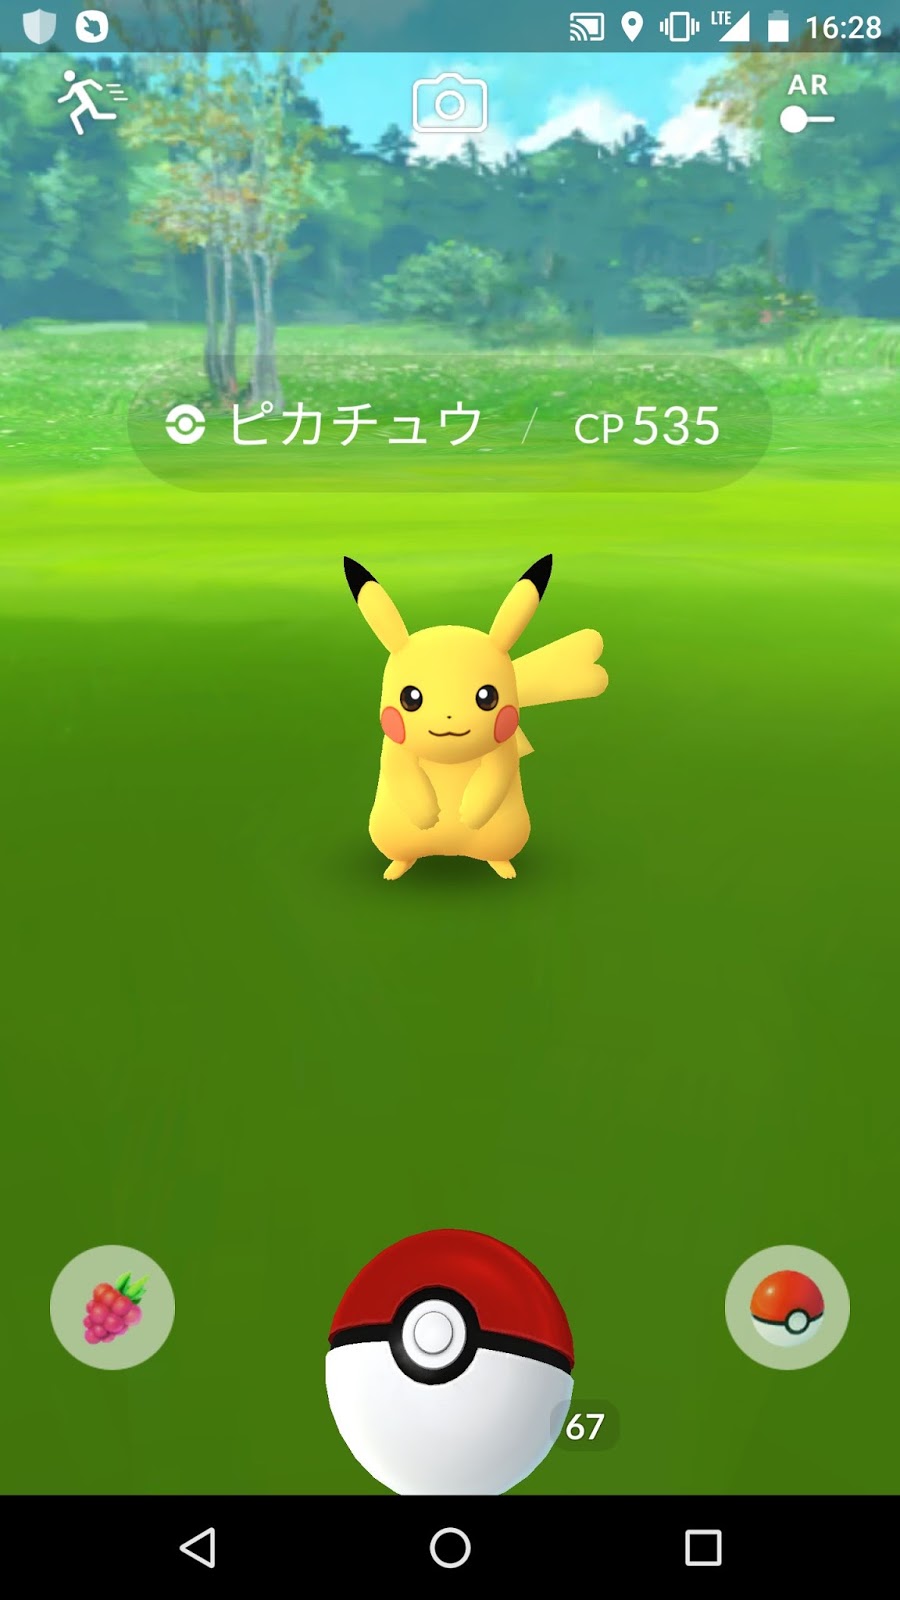 ポケモンgo日記 Pokemon Go Diary In Japan ポケモンgoのピカチュウ 野生でメスのポケモンも出現 Female Pickachu Was Found In Wild